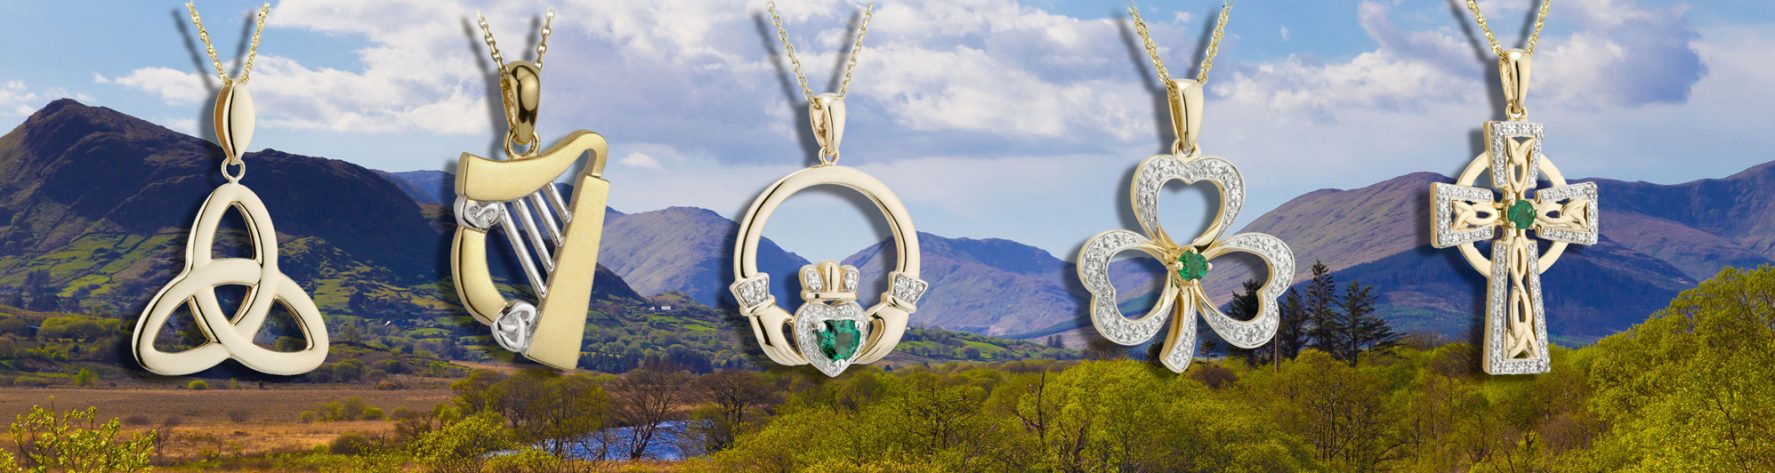 Celtic-Symbols of Ireland in Jewelry